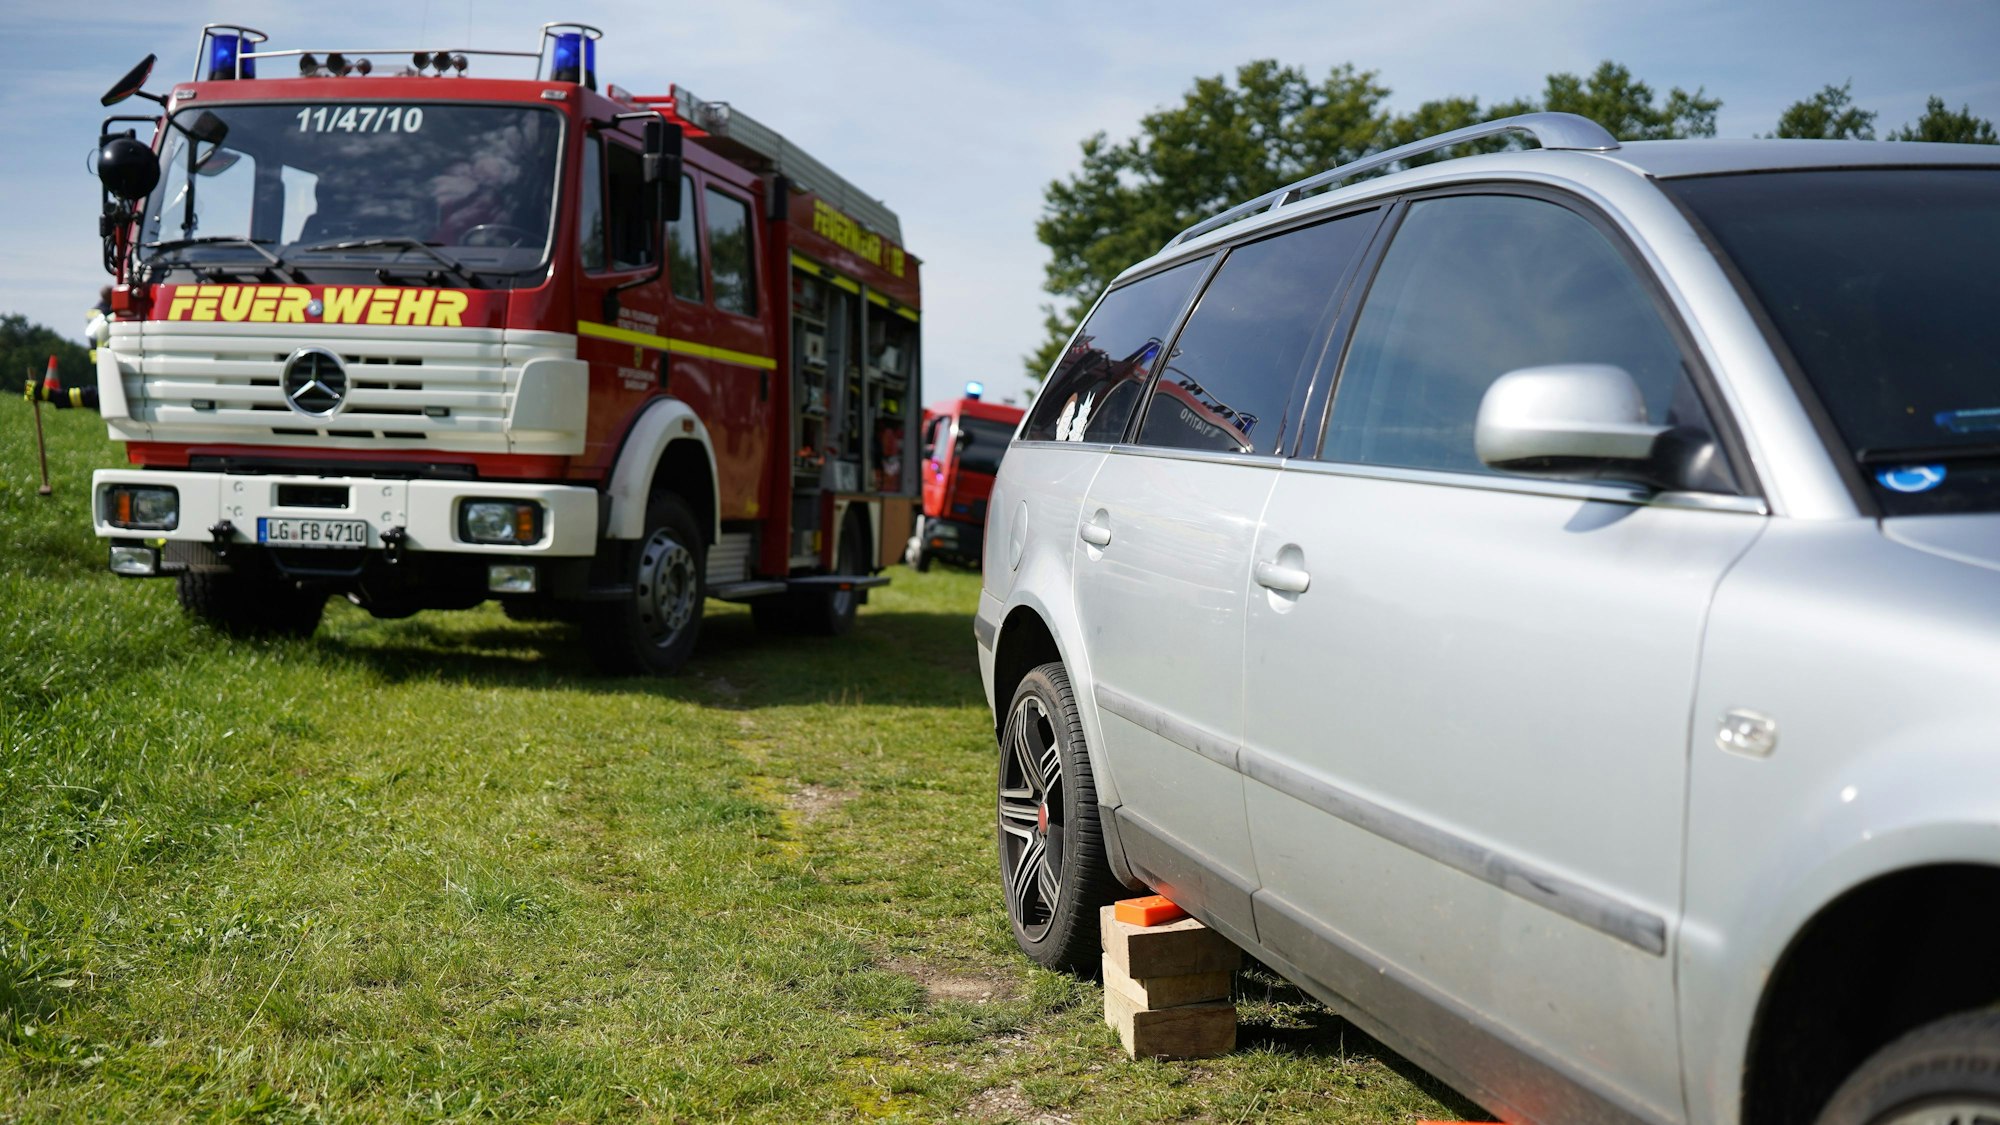 Der Unfallwagen, ein silberner Kombi, und ein Fahrzeug der Feuerwehr stehen am Unfallort.